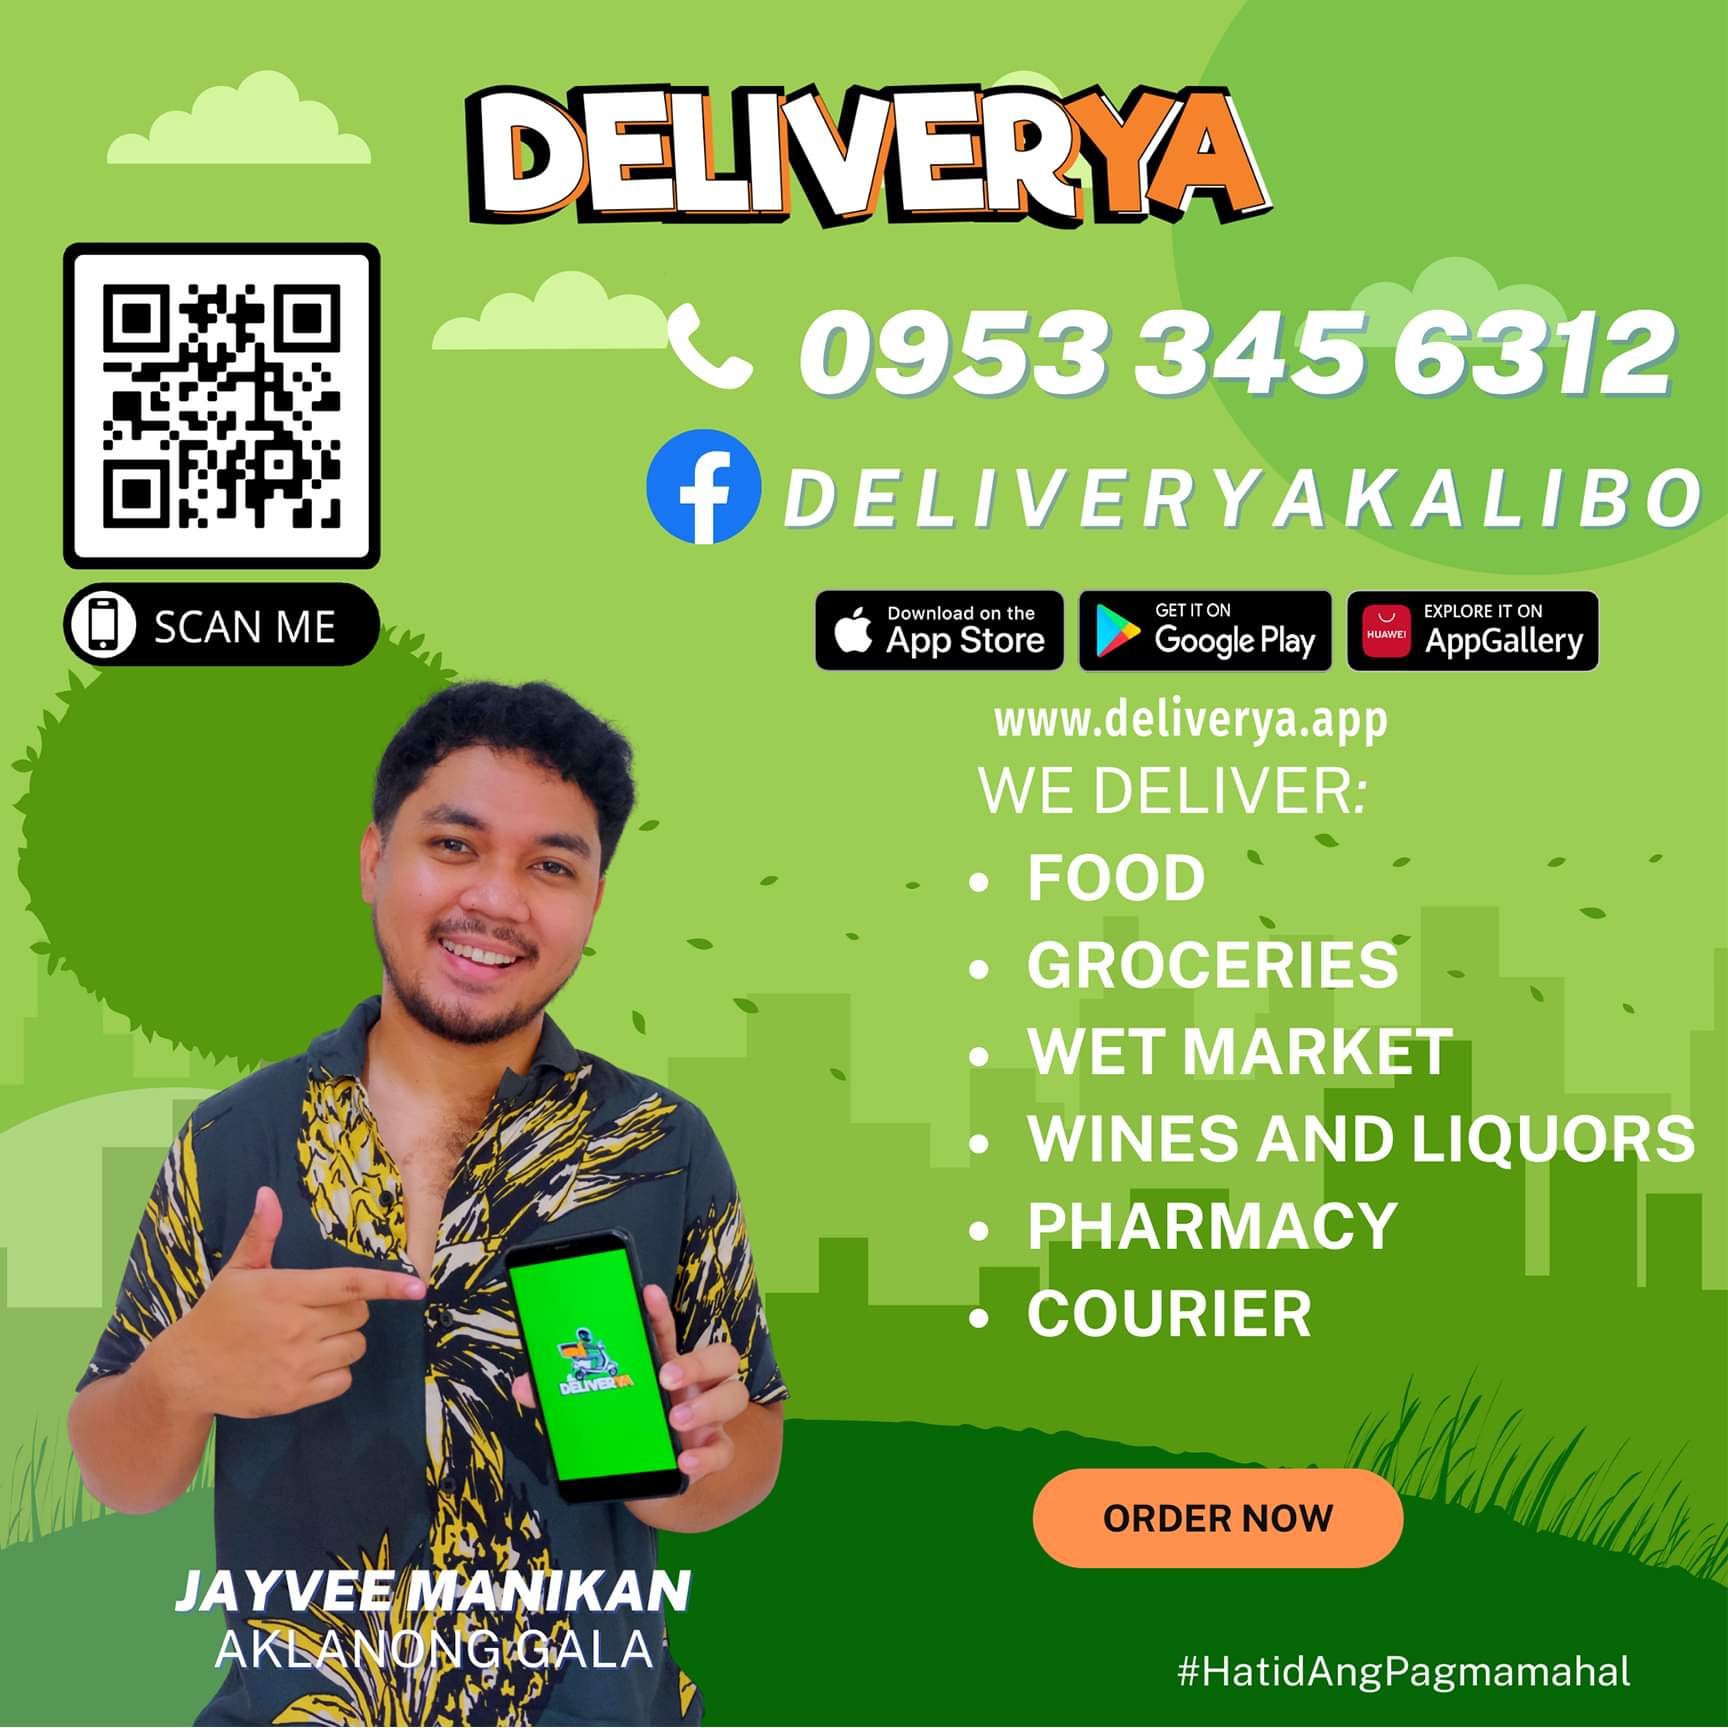 Deliverya App